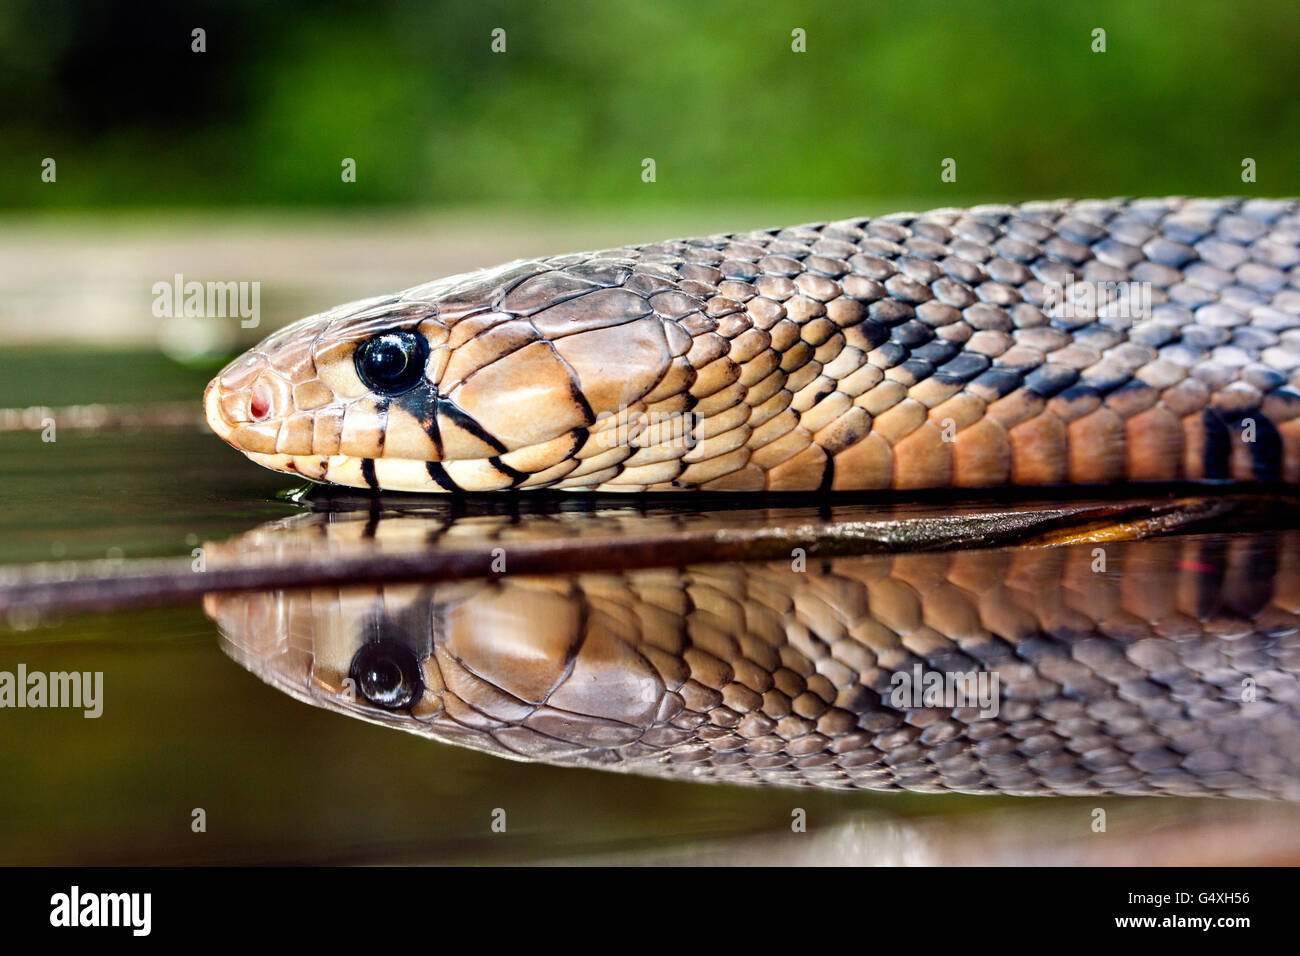 Texas (Drymarchon melanurus serpent indigo) [erebennus spécimen contrôlé] - Lula Sams, Brownsville, Texas, États-Unis Banque D'Images